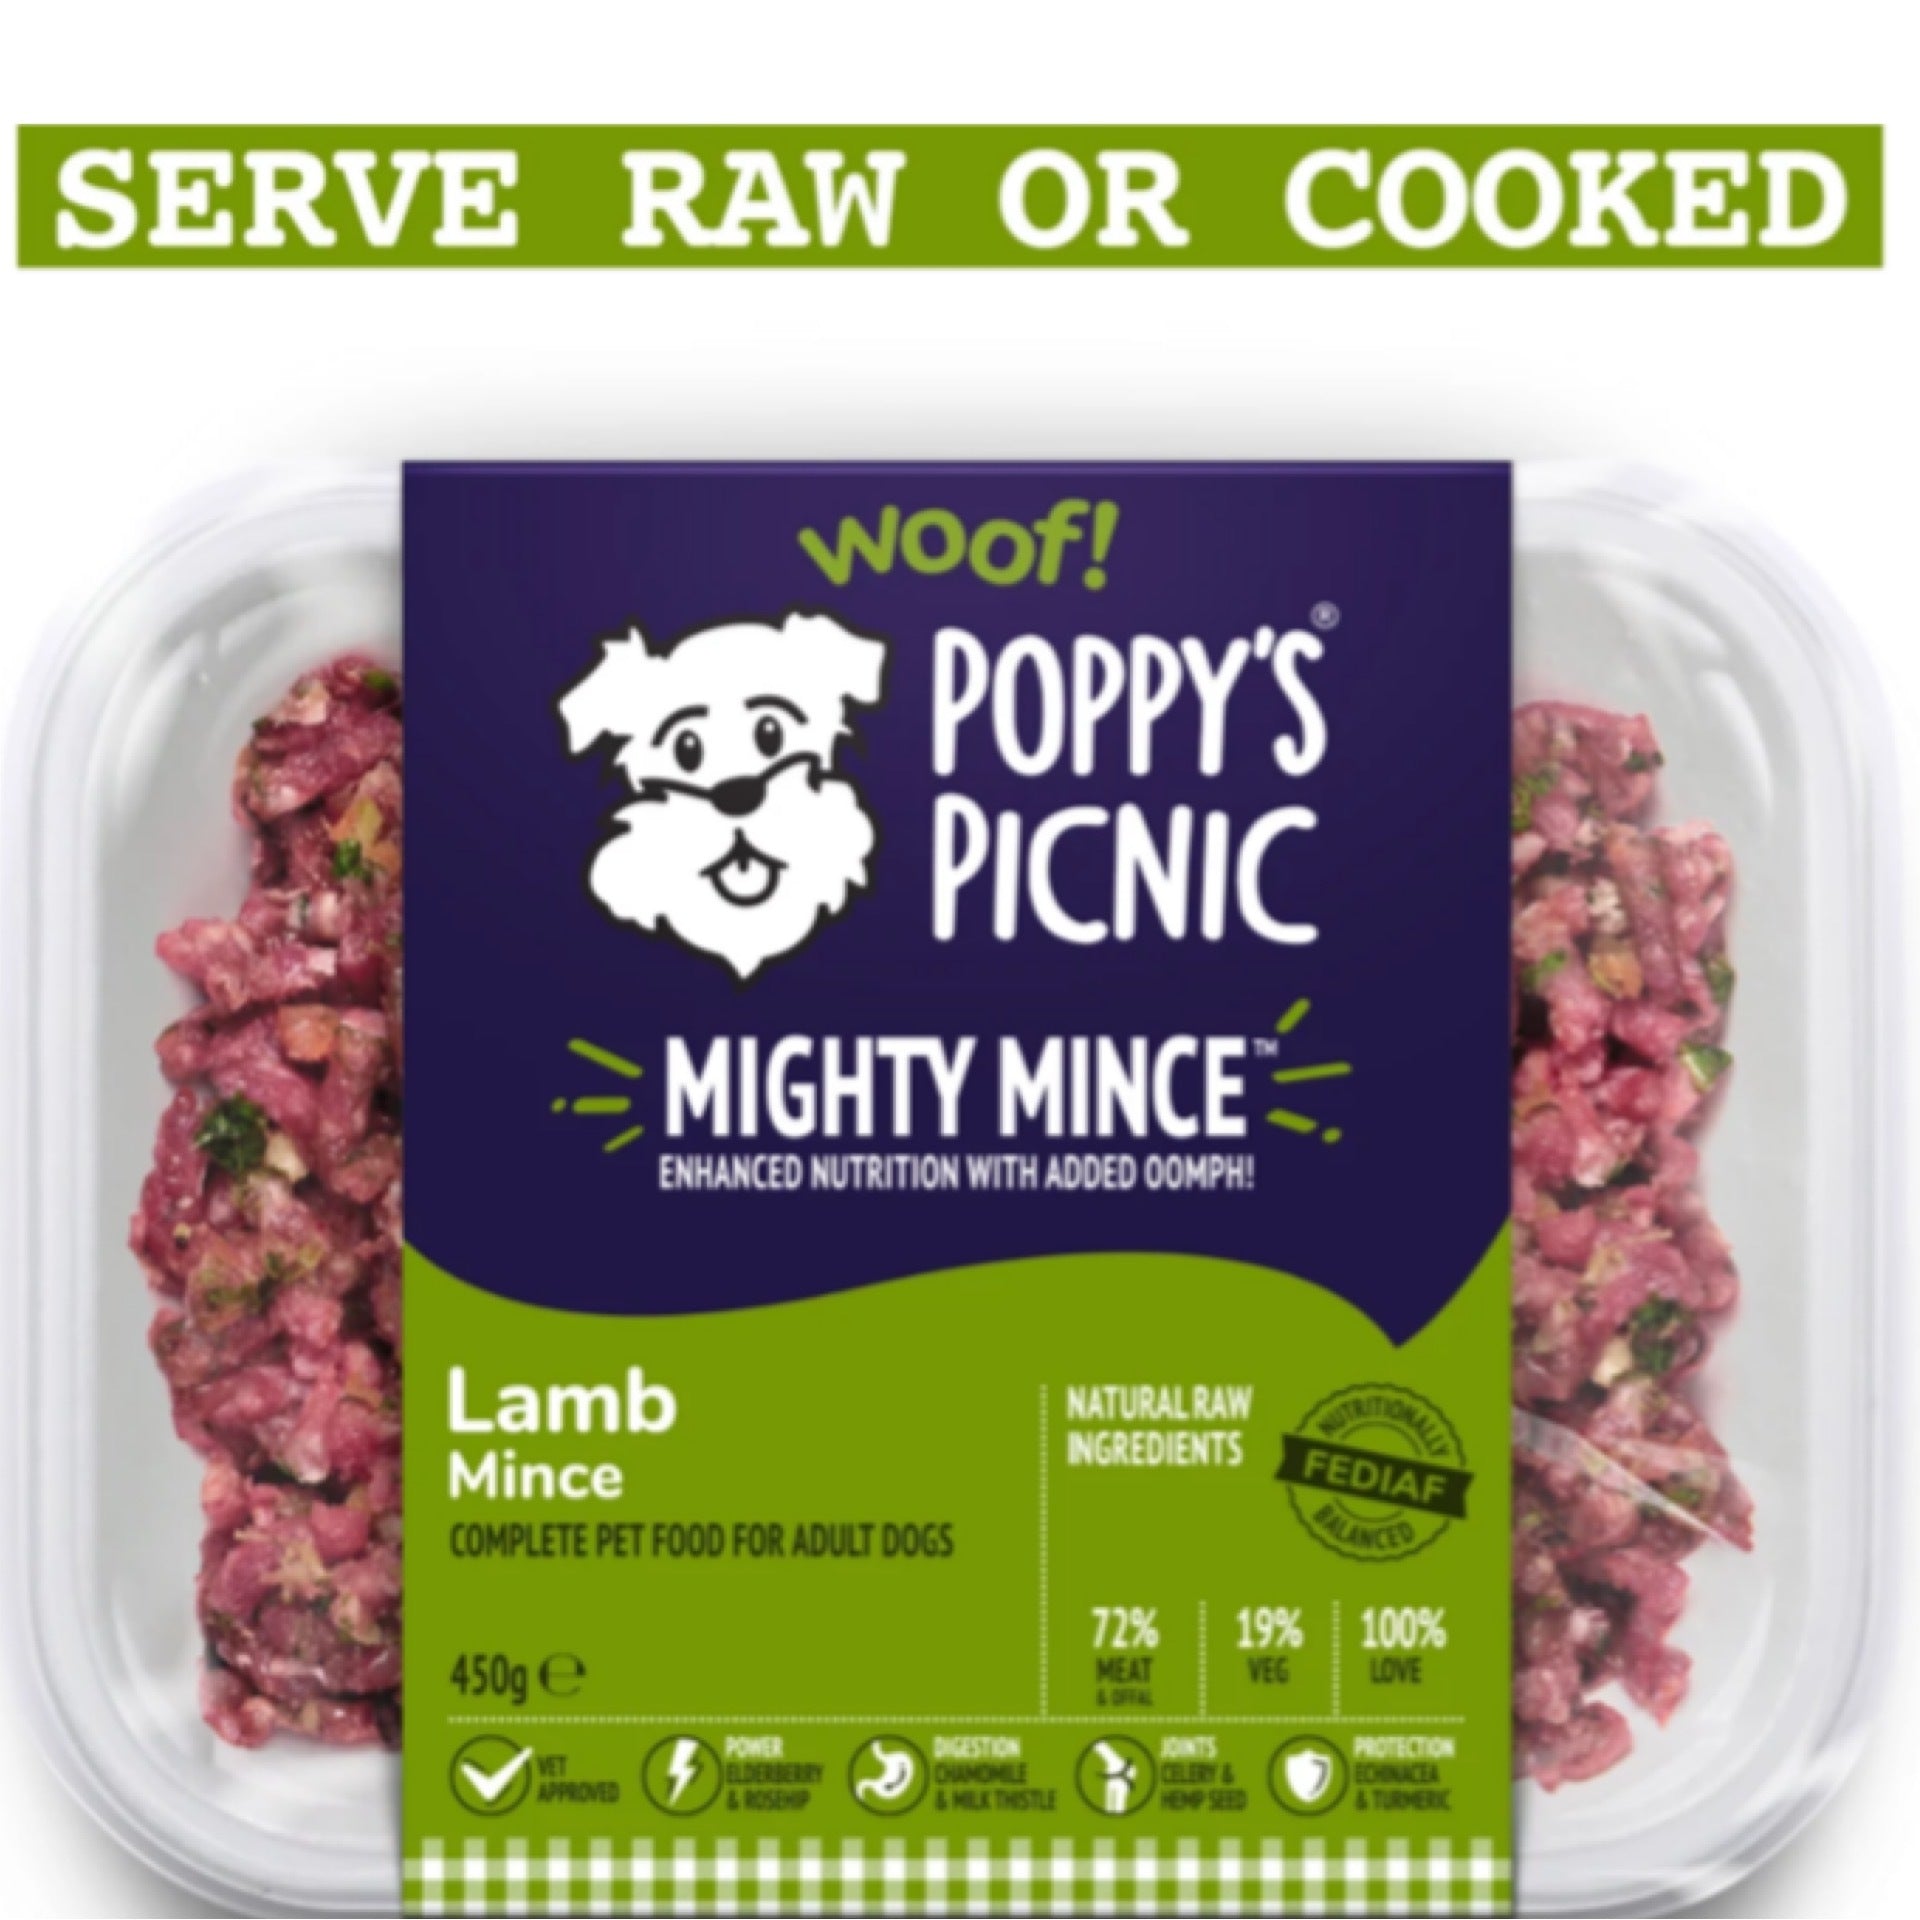 Poppy’s Picnic Mighty Mince Lamb 450g